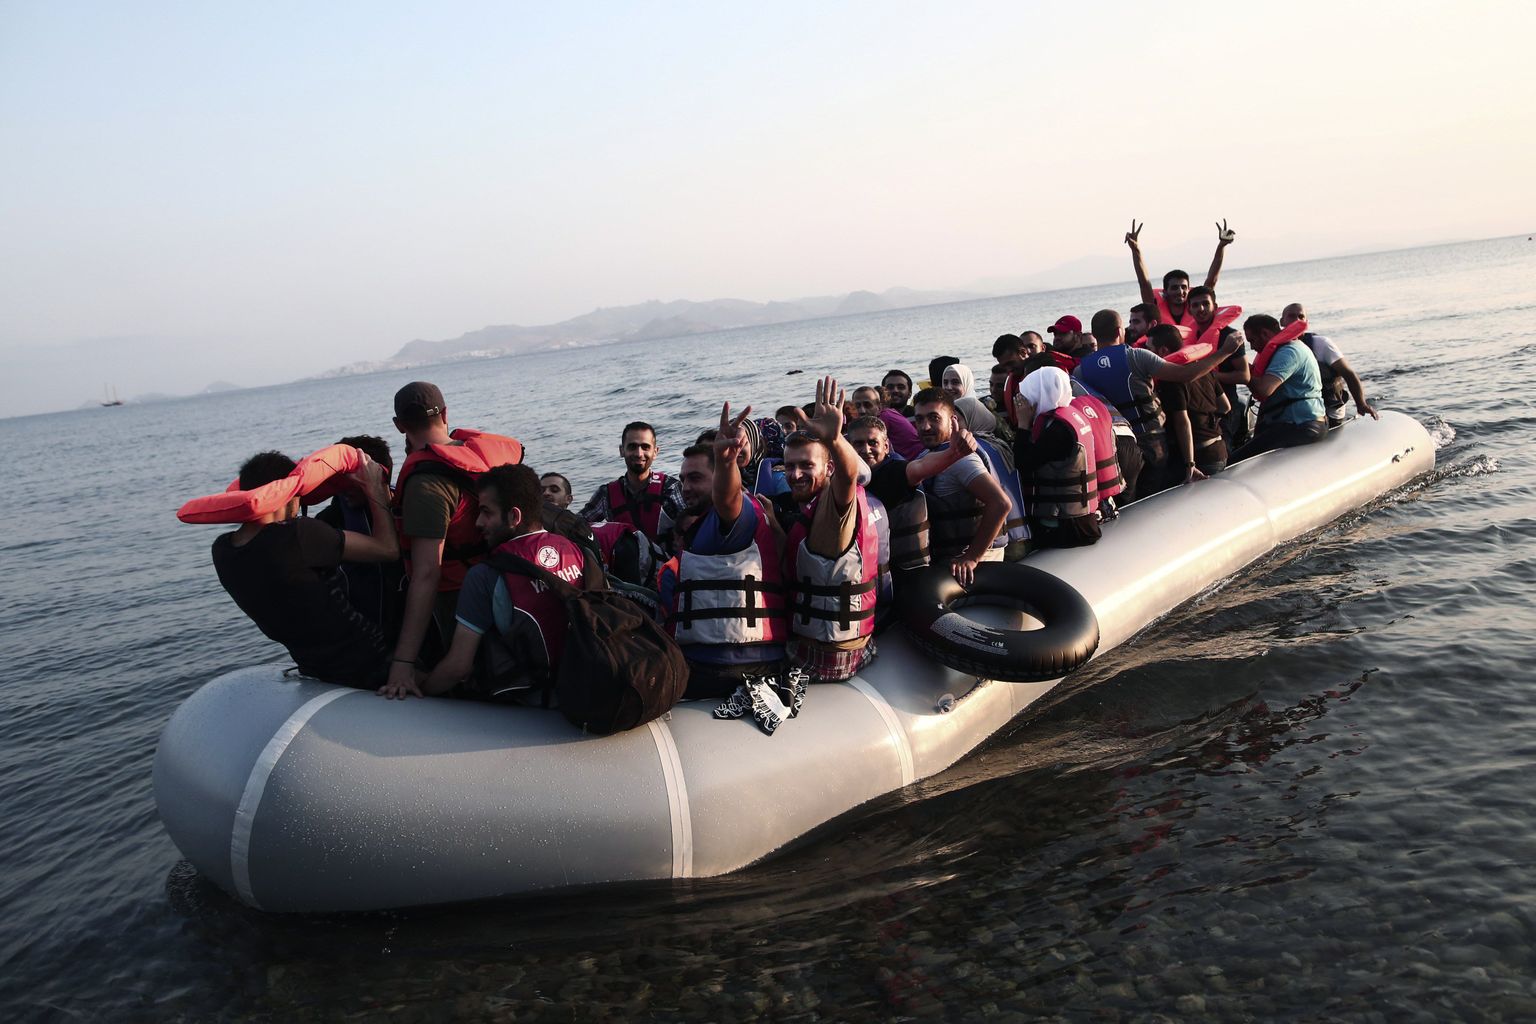 Nädalavahetusel Türgist Kreekale kuuluvale Kosi saarele jõudnud immigrandid.